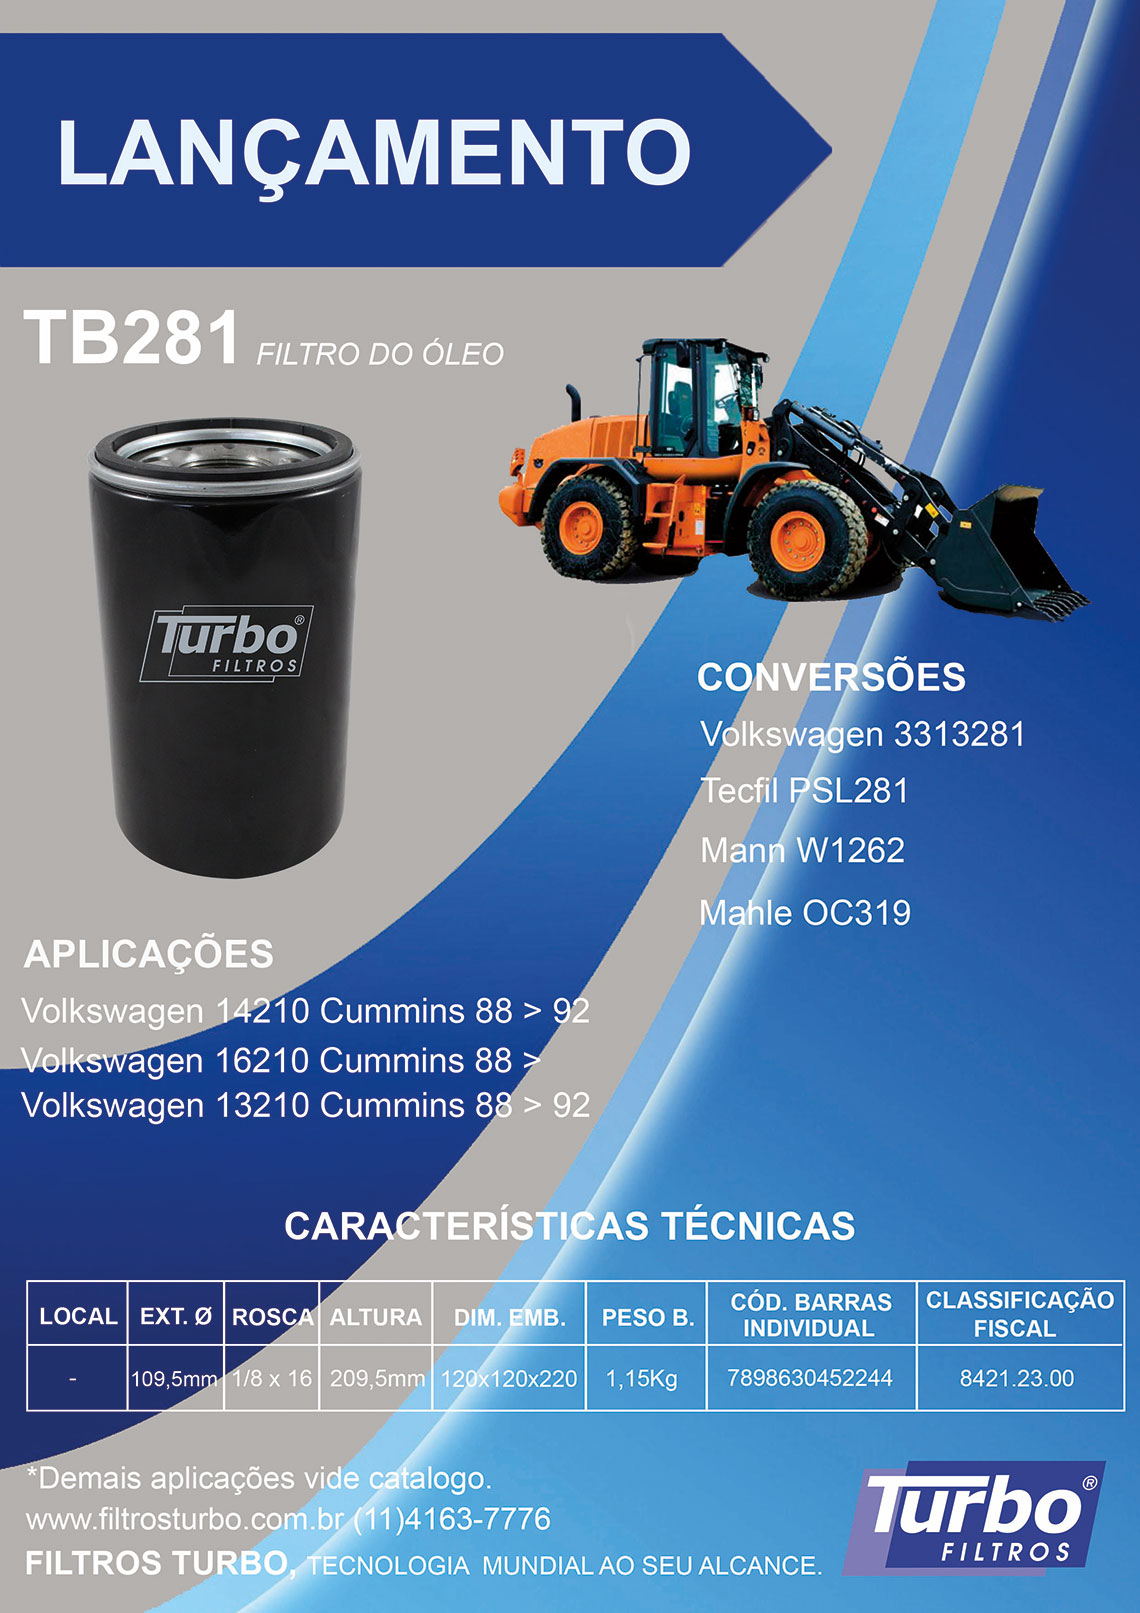 Filtros Turbo Tecnologia Mundial ao seu Alcance 